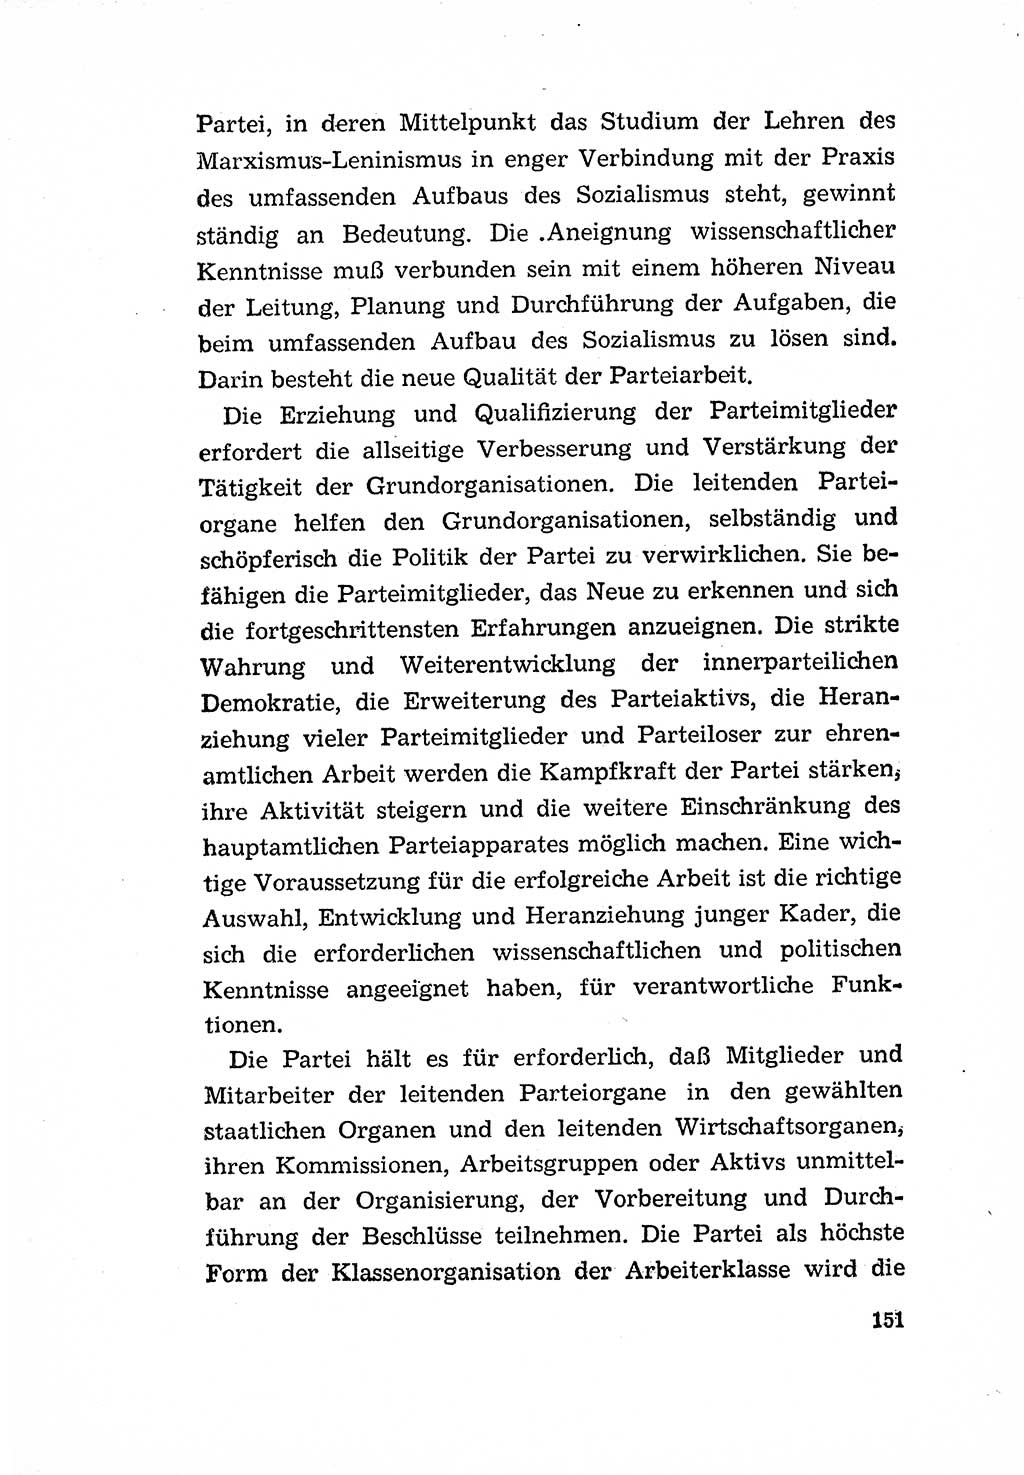 Programm der Sozialistischen Einheitspartei Deutschlands (SED) [Deutsche Demokratische Republik (DDR)] 1963, Seite 151 (Progr. SED DDR 1963, S. 151)